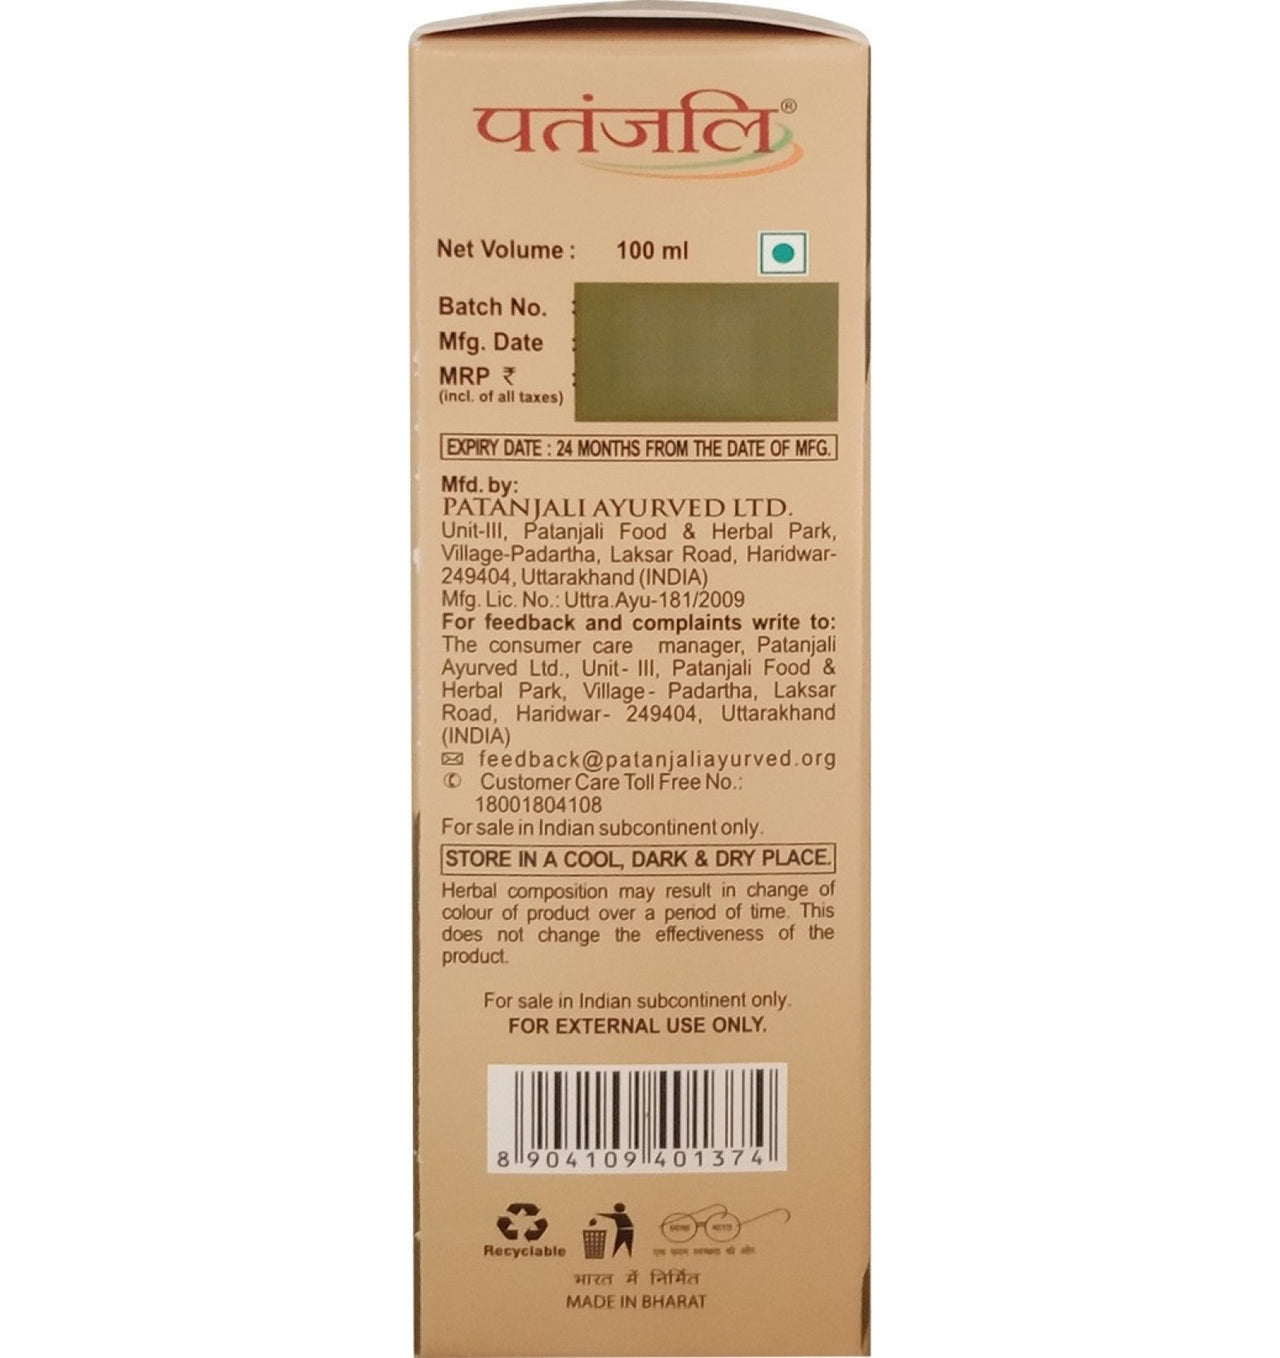 Patanjali Kesh Kanti Advanced Herbal Hair Expert Oil - Distacart